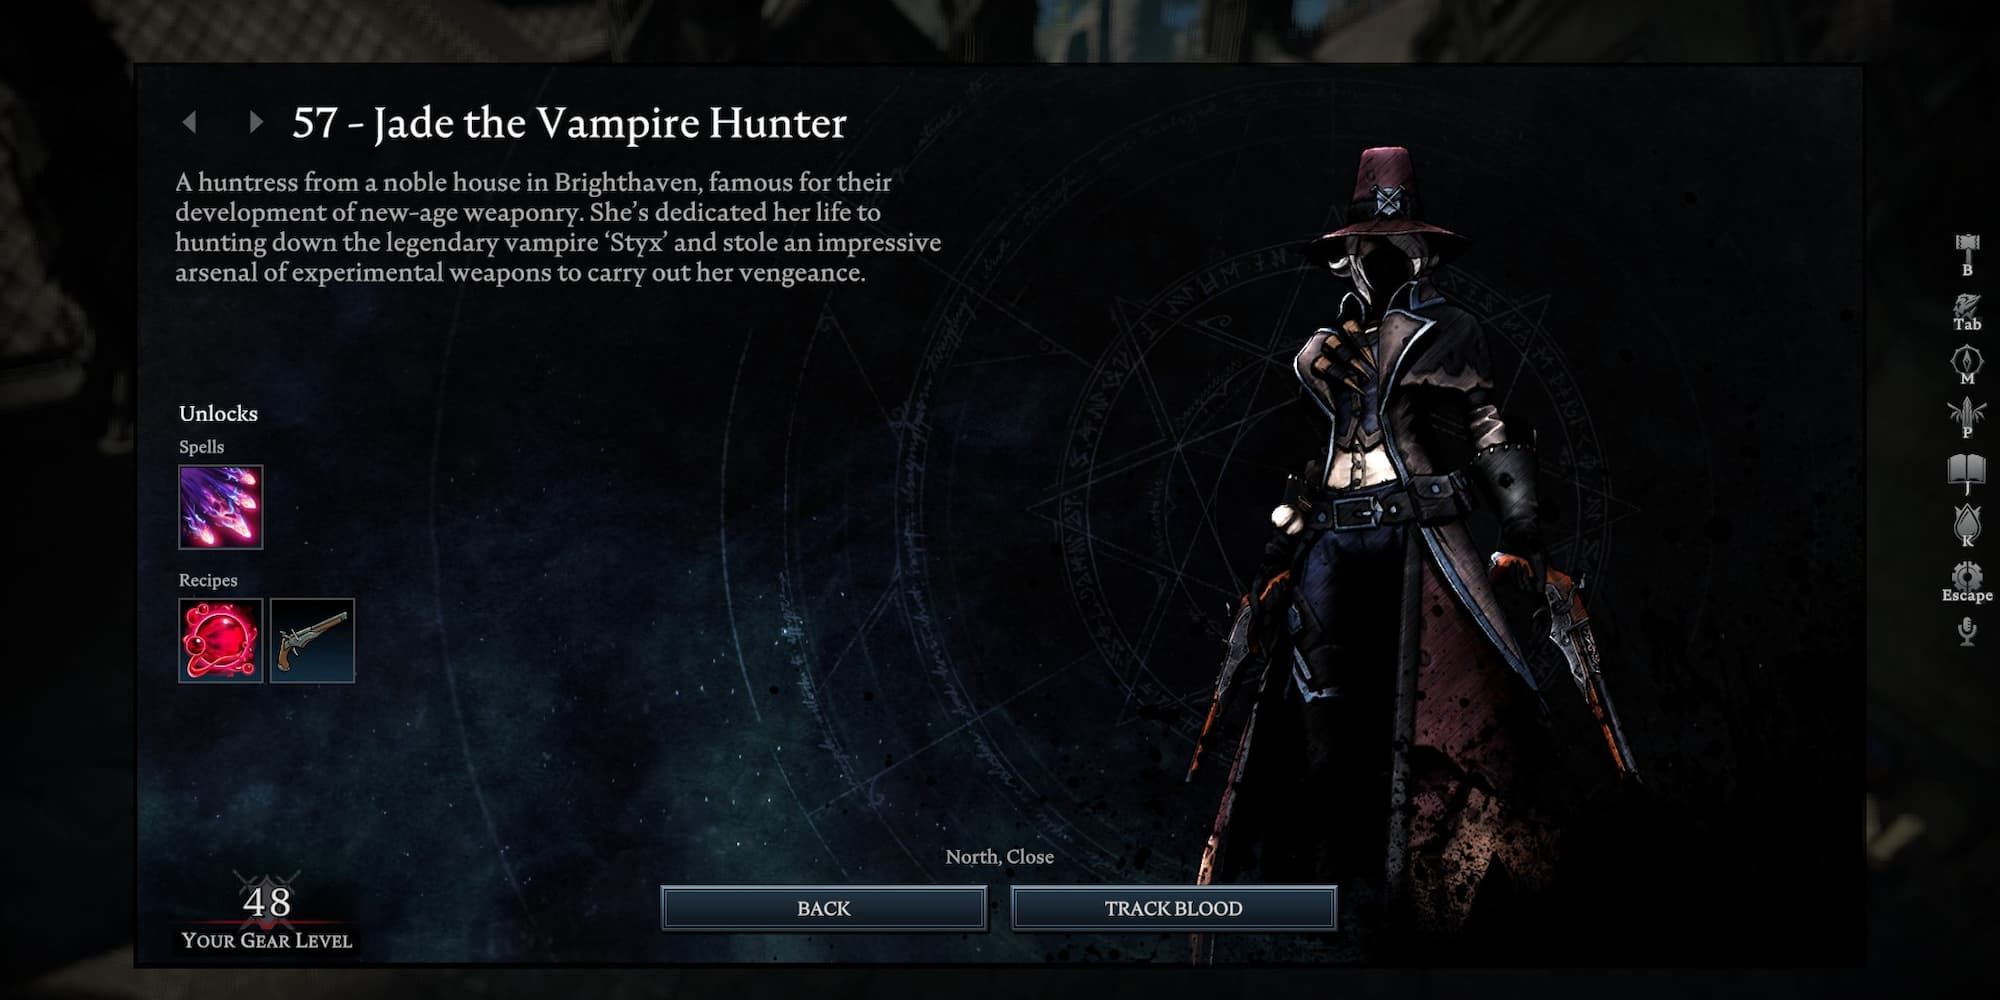 Information screen for Jade the Vampire Hunter in V Rising